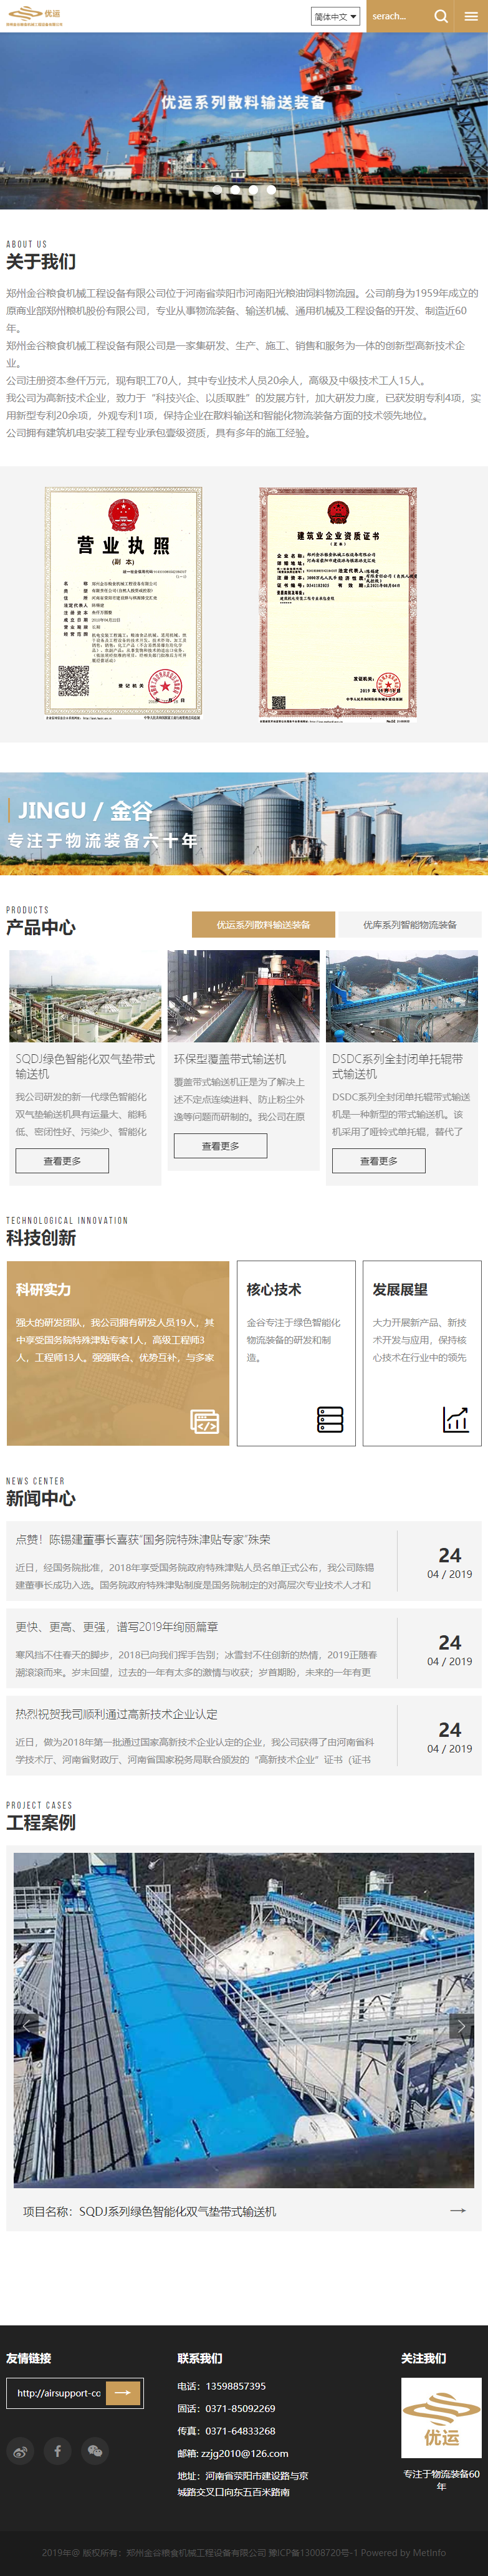 郑州金谷粮食机械工程设备有限公司网站案例